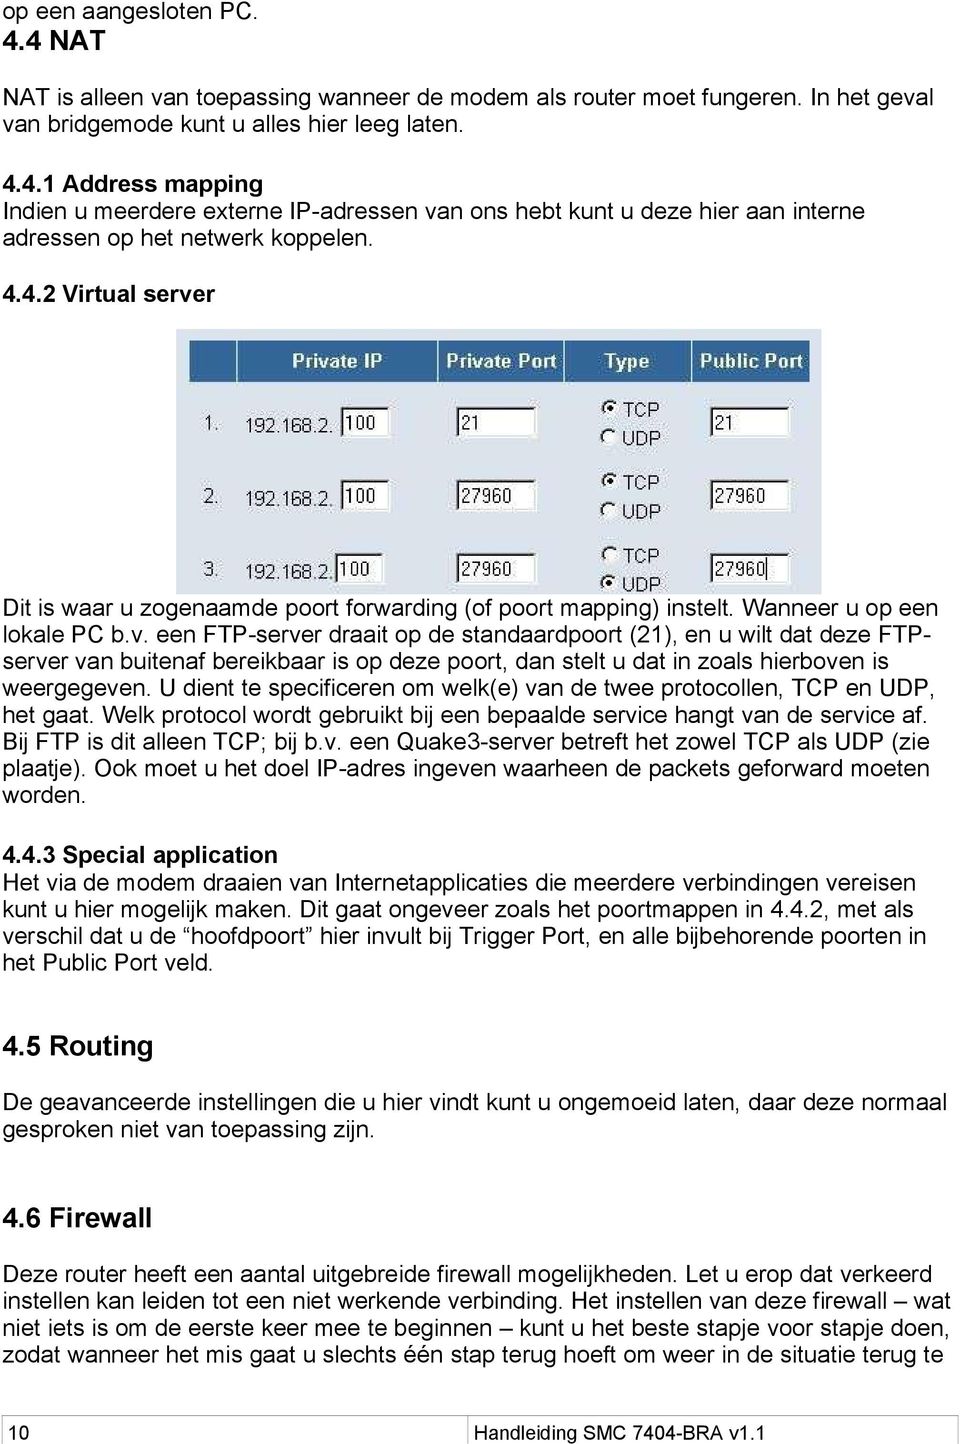 U dient te specificeren om welk(e) van de twee protocollen, TCP en UDP, het gaat. Welk protocol wordt gebruikt bij een bepaalde service hangt van de service af. Bij FTP is dit alleen TCP; bij b.v. een Quake3-server betreft het zowel TCP als UDP (zie plaatje).